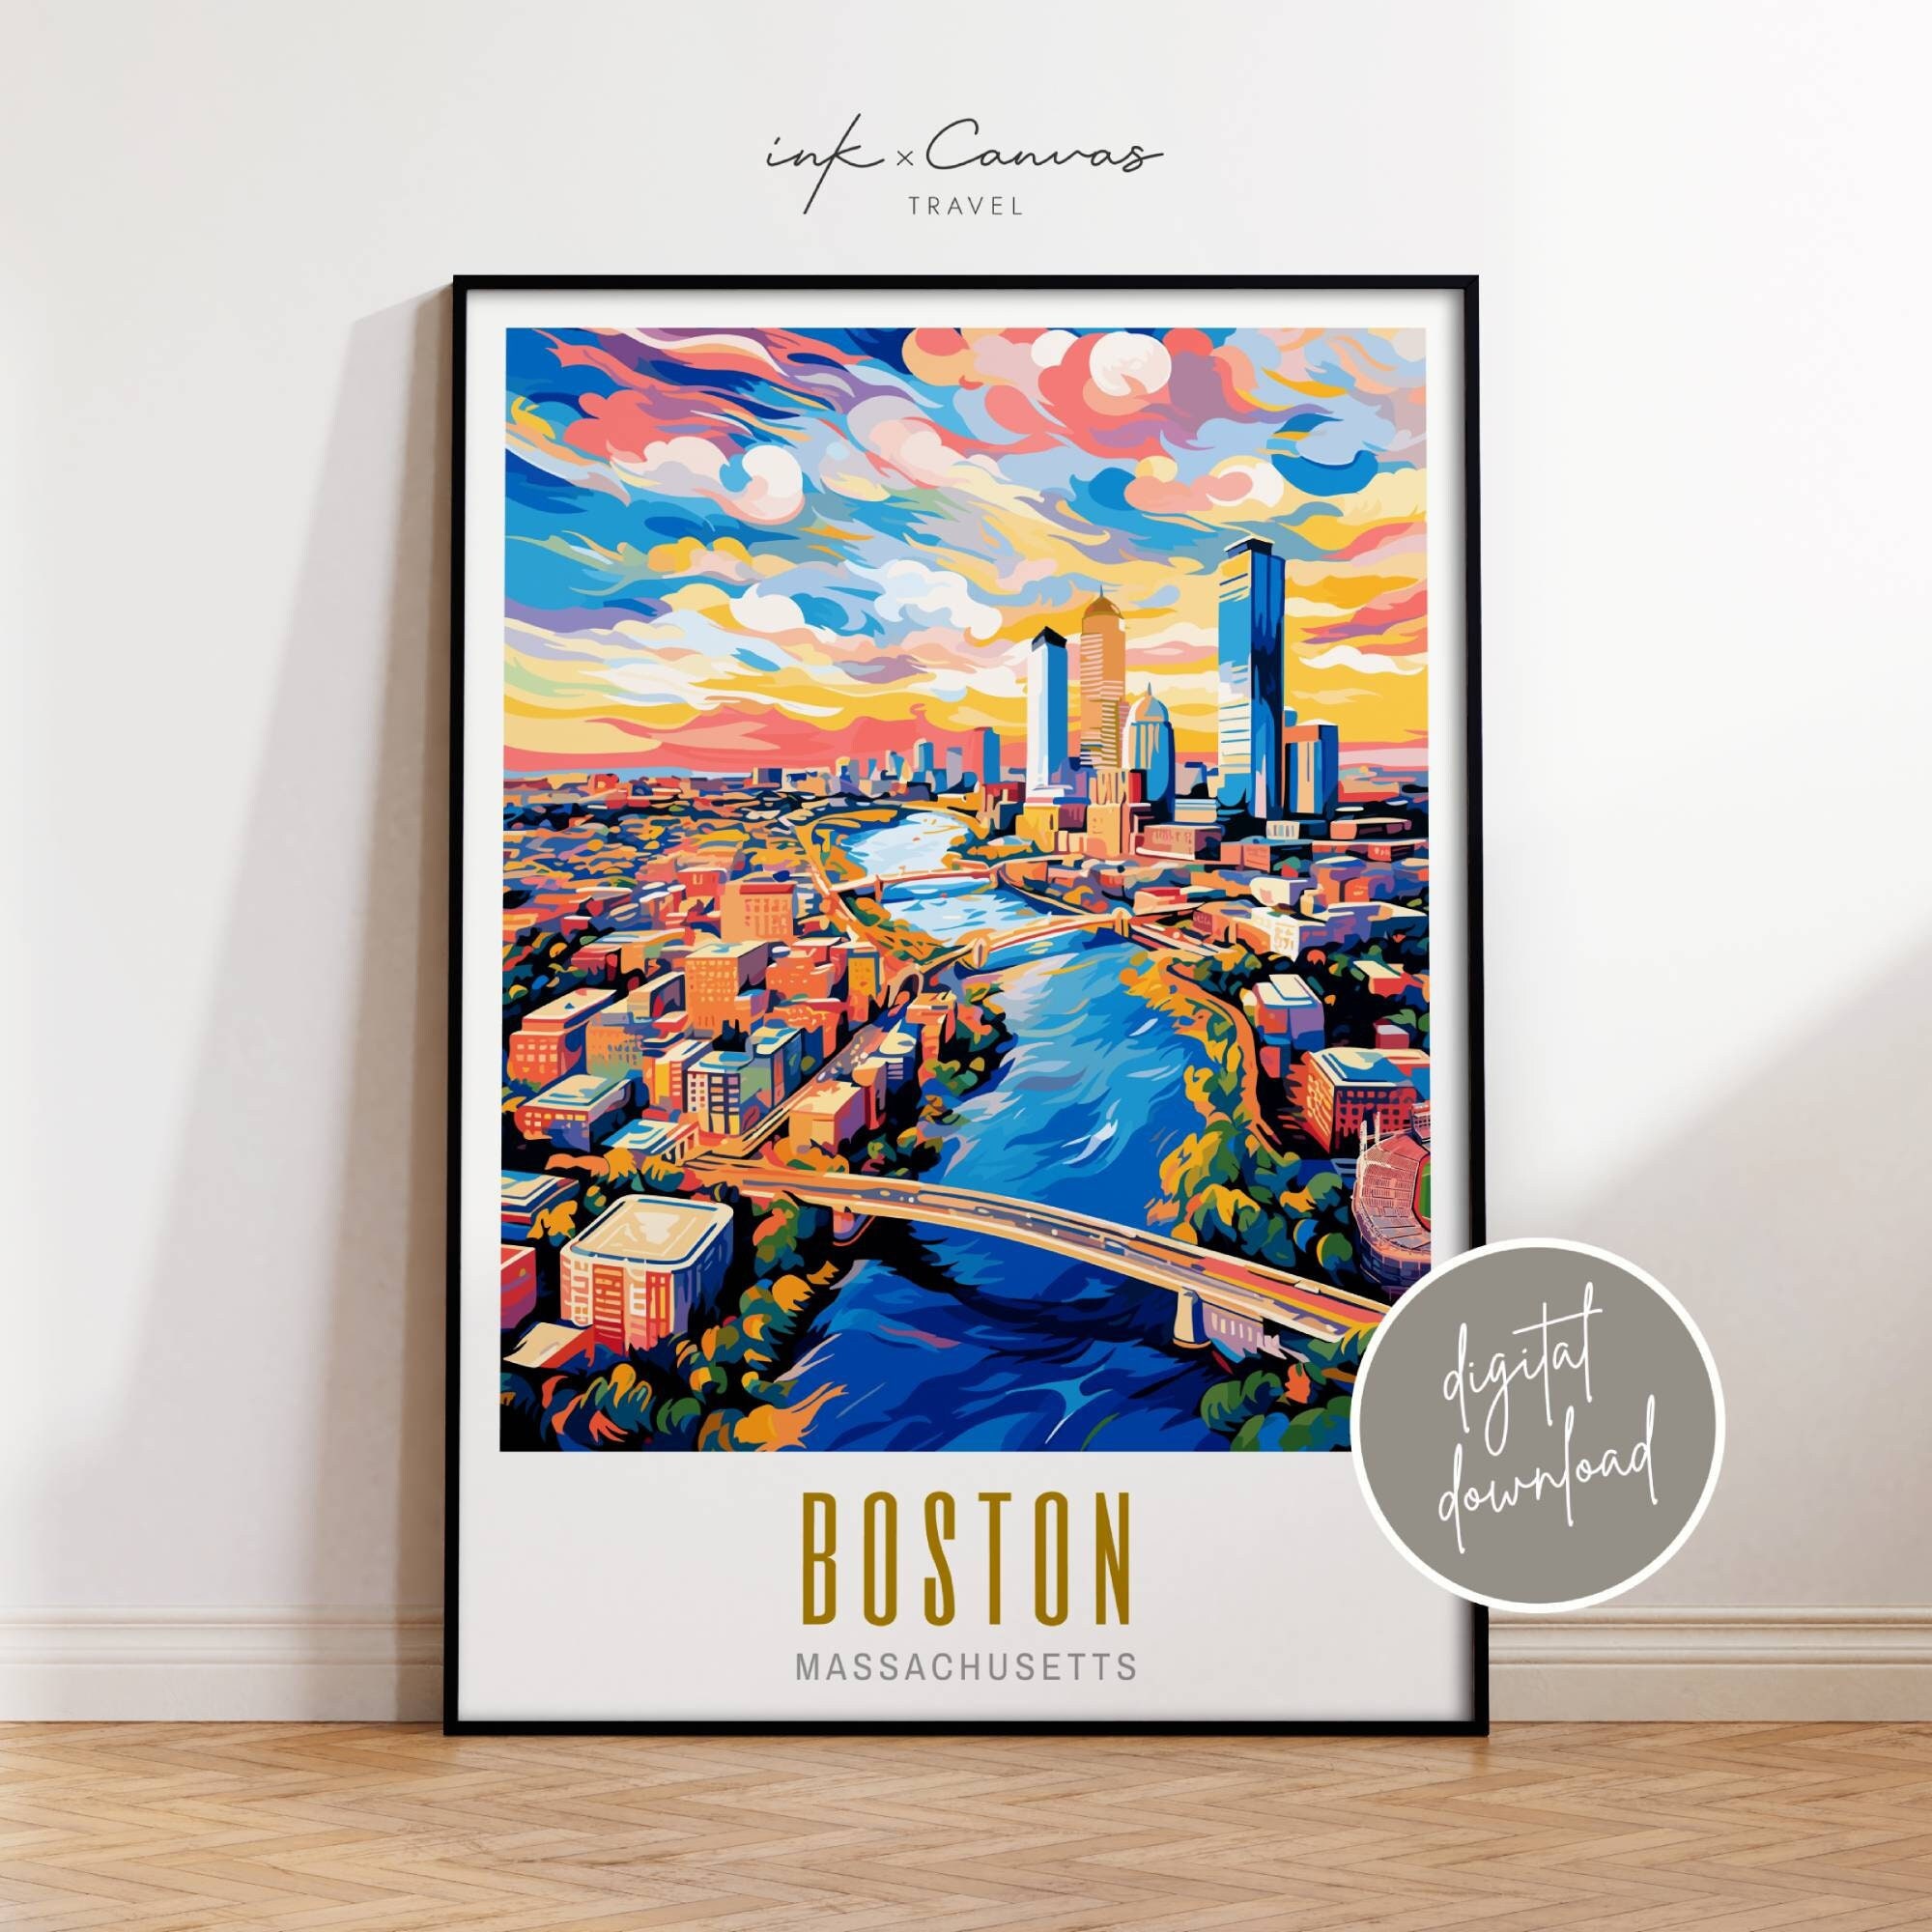 Boston Vintage Travel Postcard Restored Painting by Vintage Treasure -  Pixels